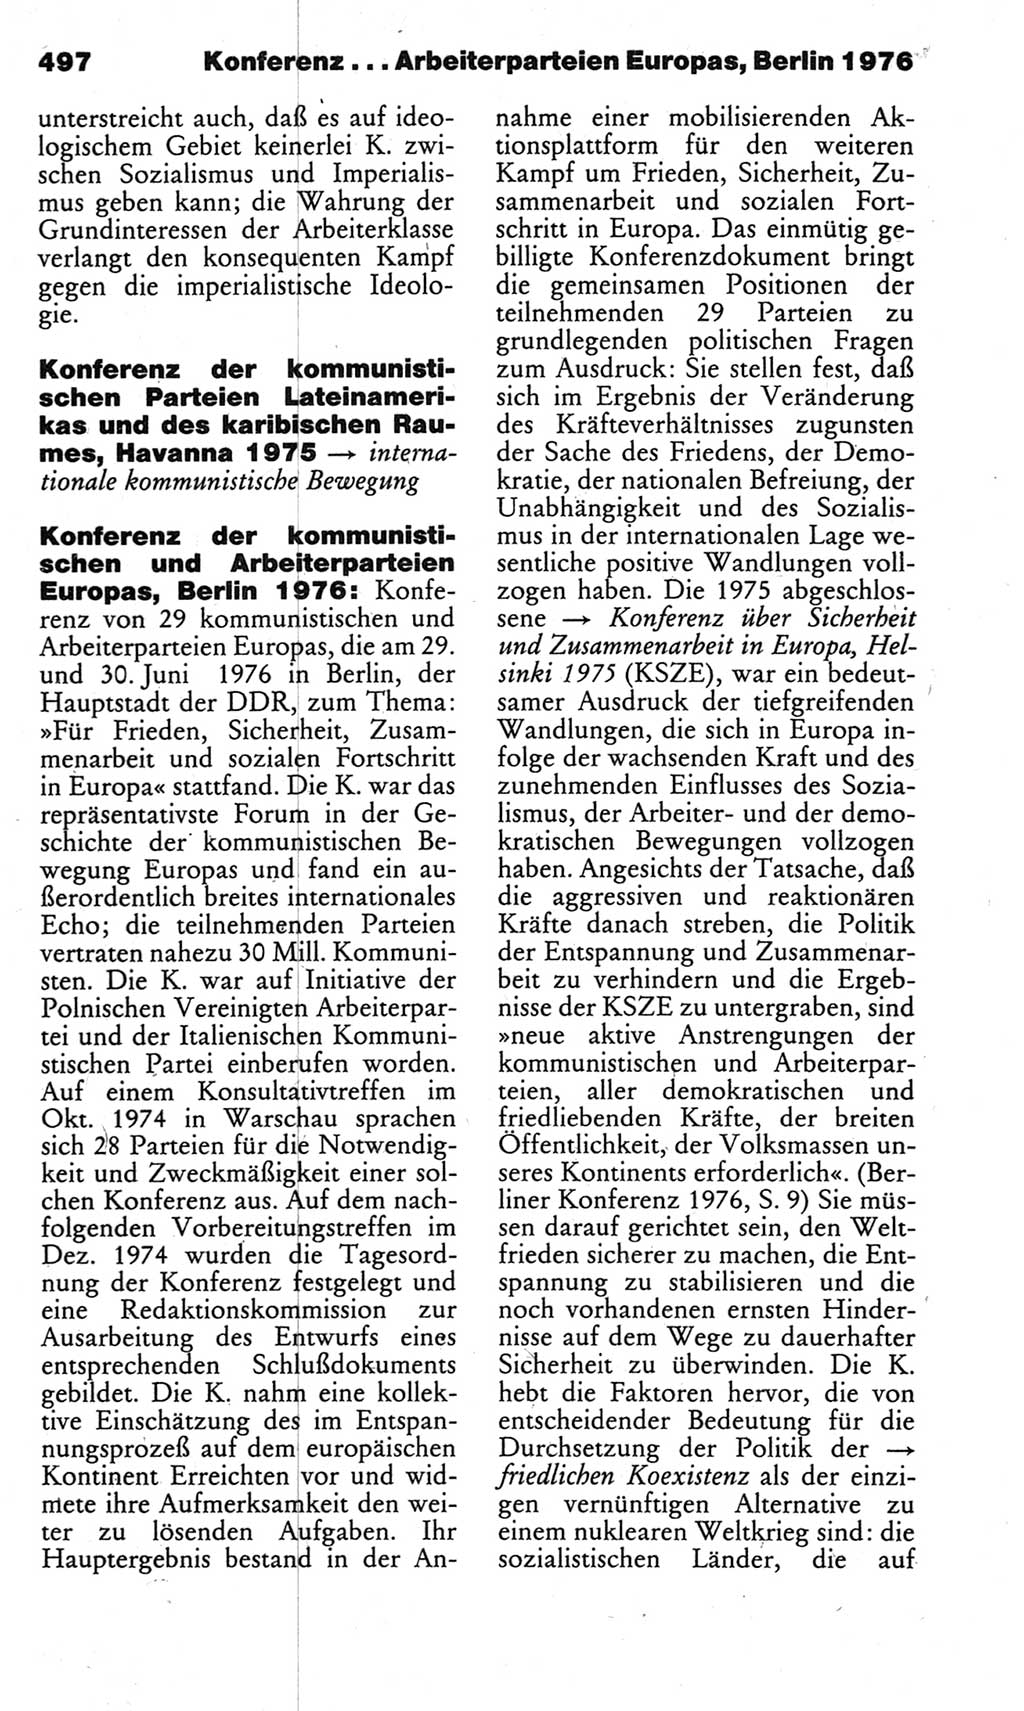 Kleines politisches Wörterbuch [Deutsche Demokratische Republik (DDR)] 1983, Seite 497 (Kl. pol. Wb. DDR 1983, S. 497)